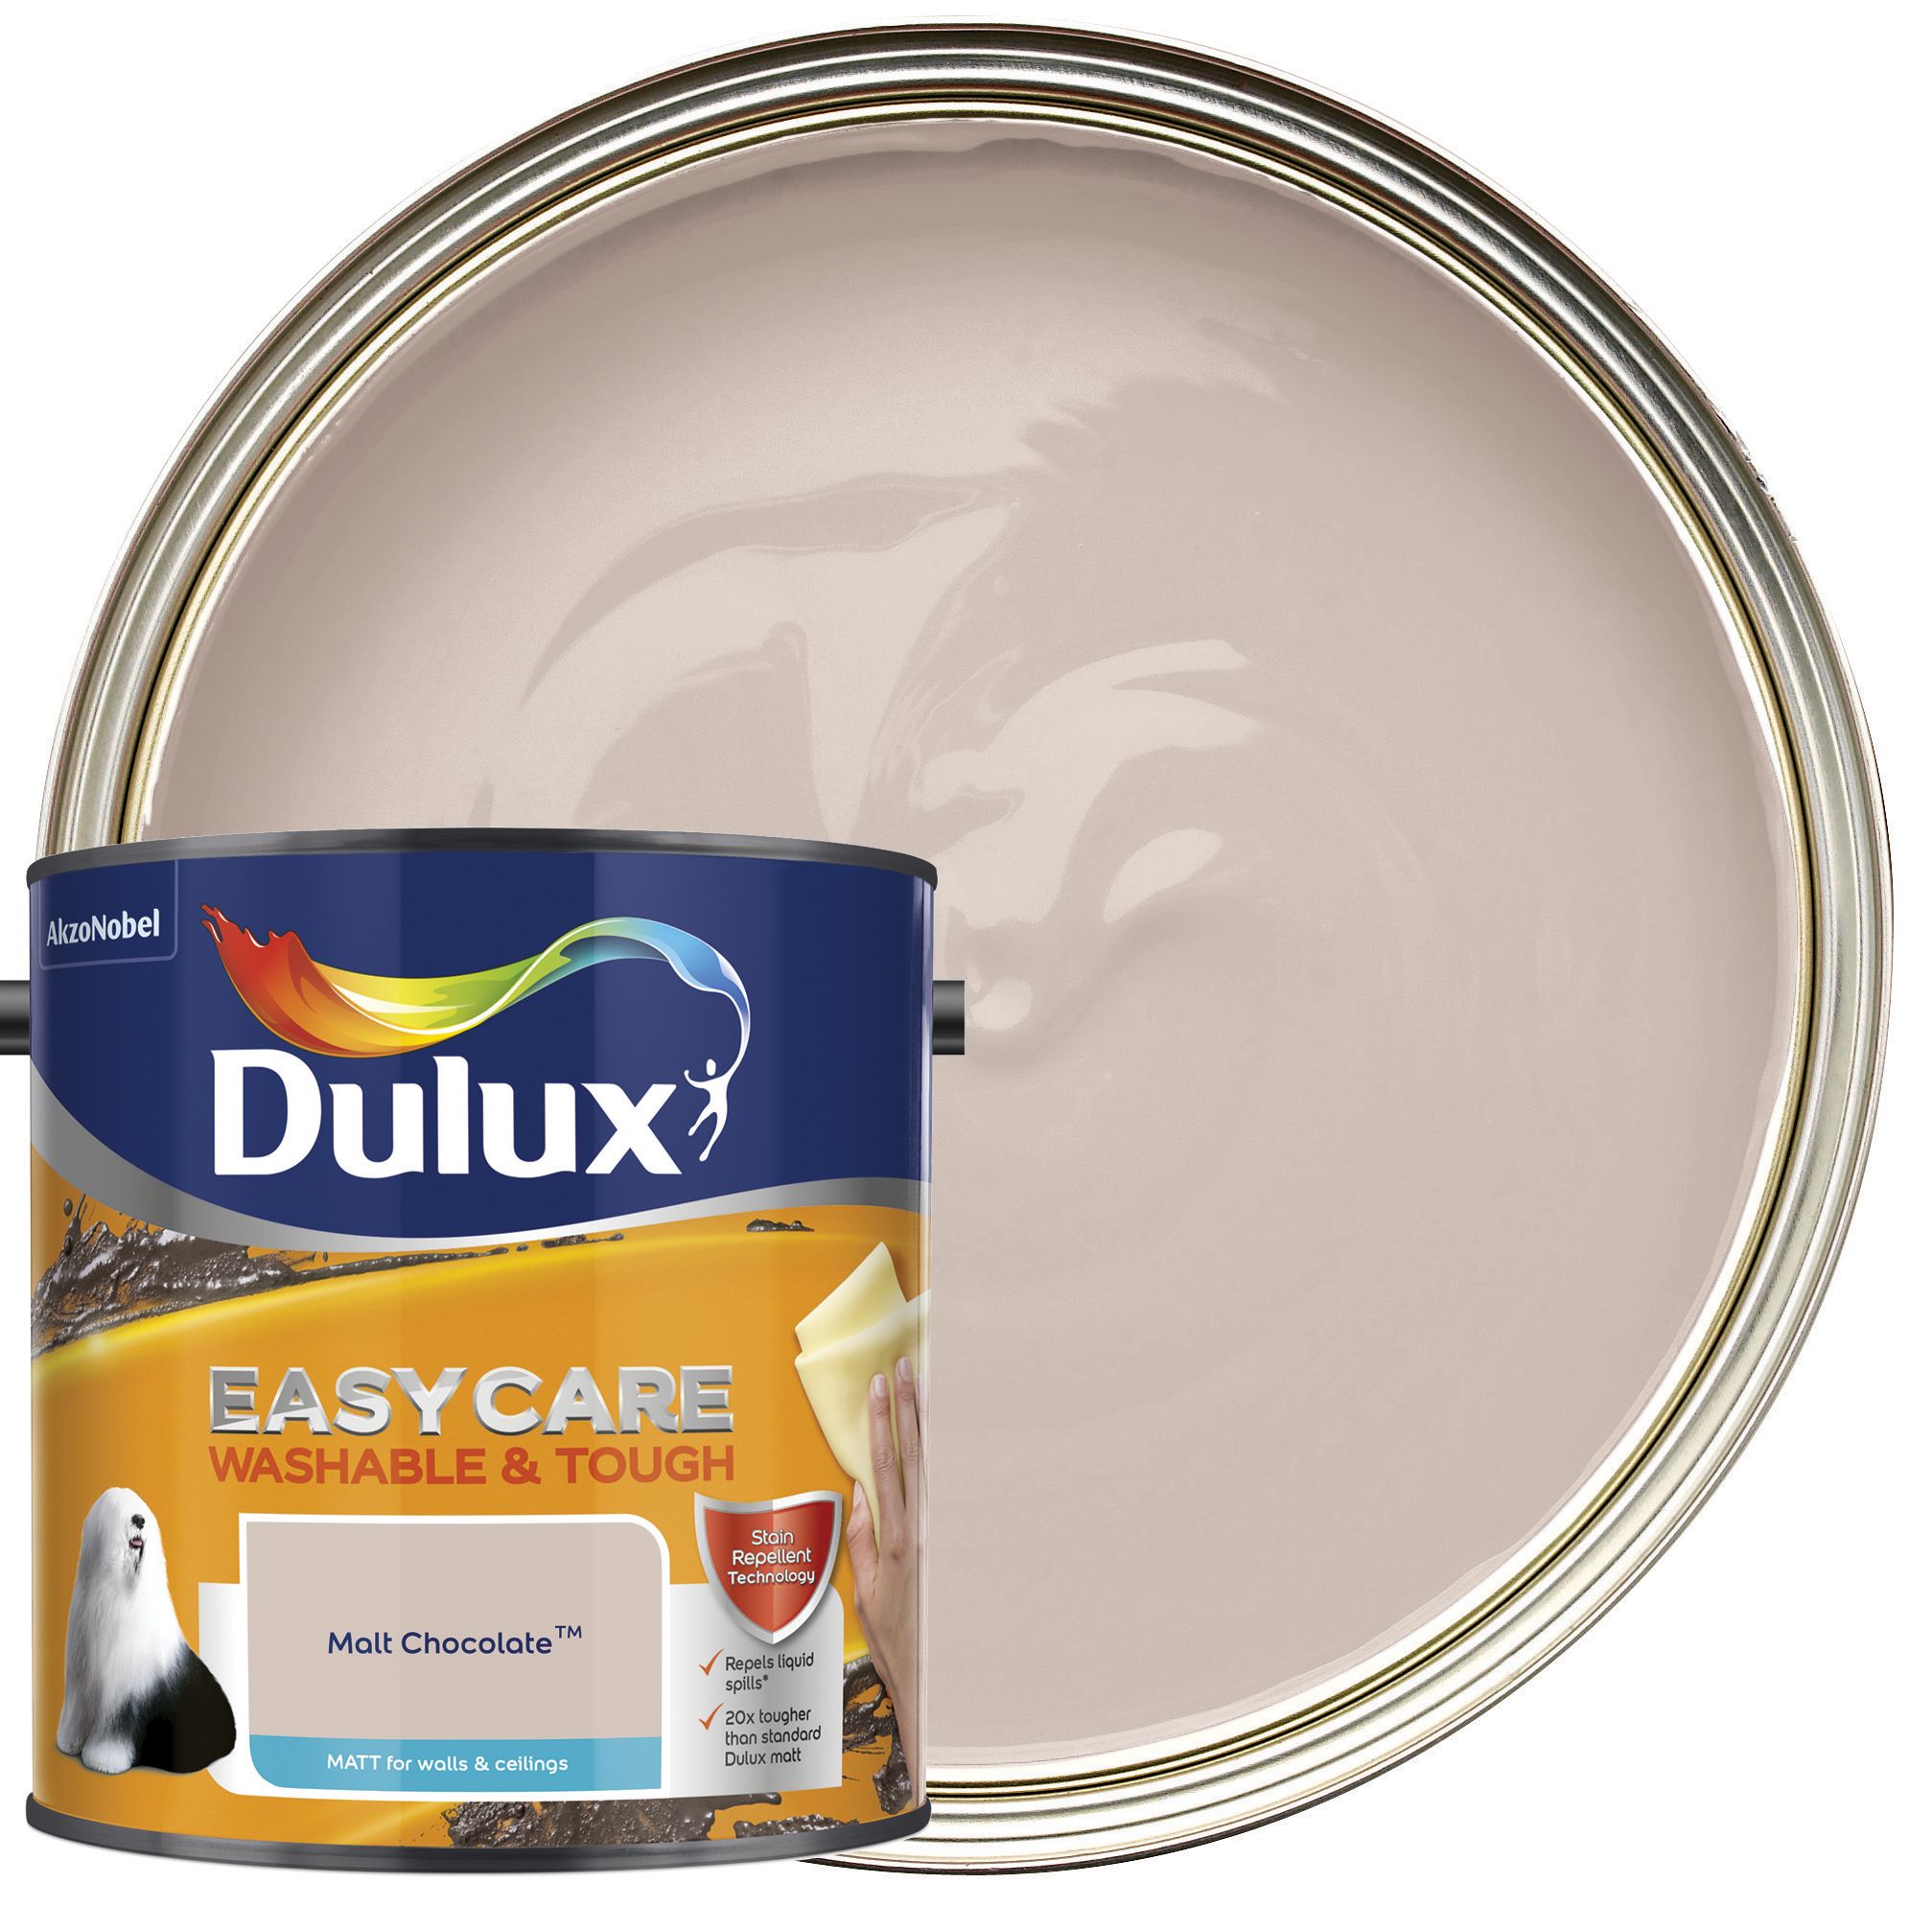 Dulux Easycare Washable & Tough Matt Emulsion Paint - Malt Chocolate - 2.5L